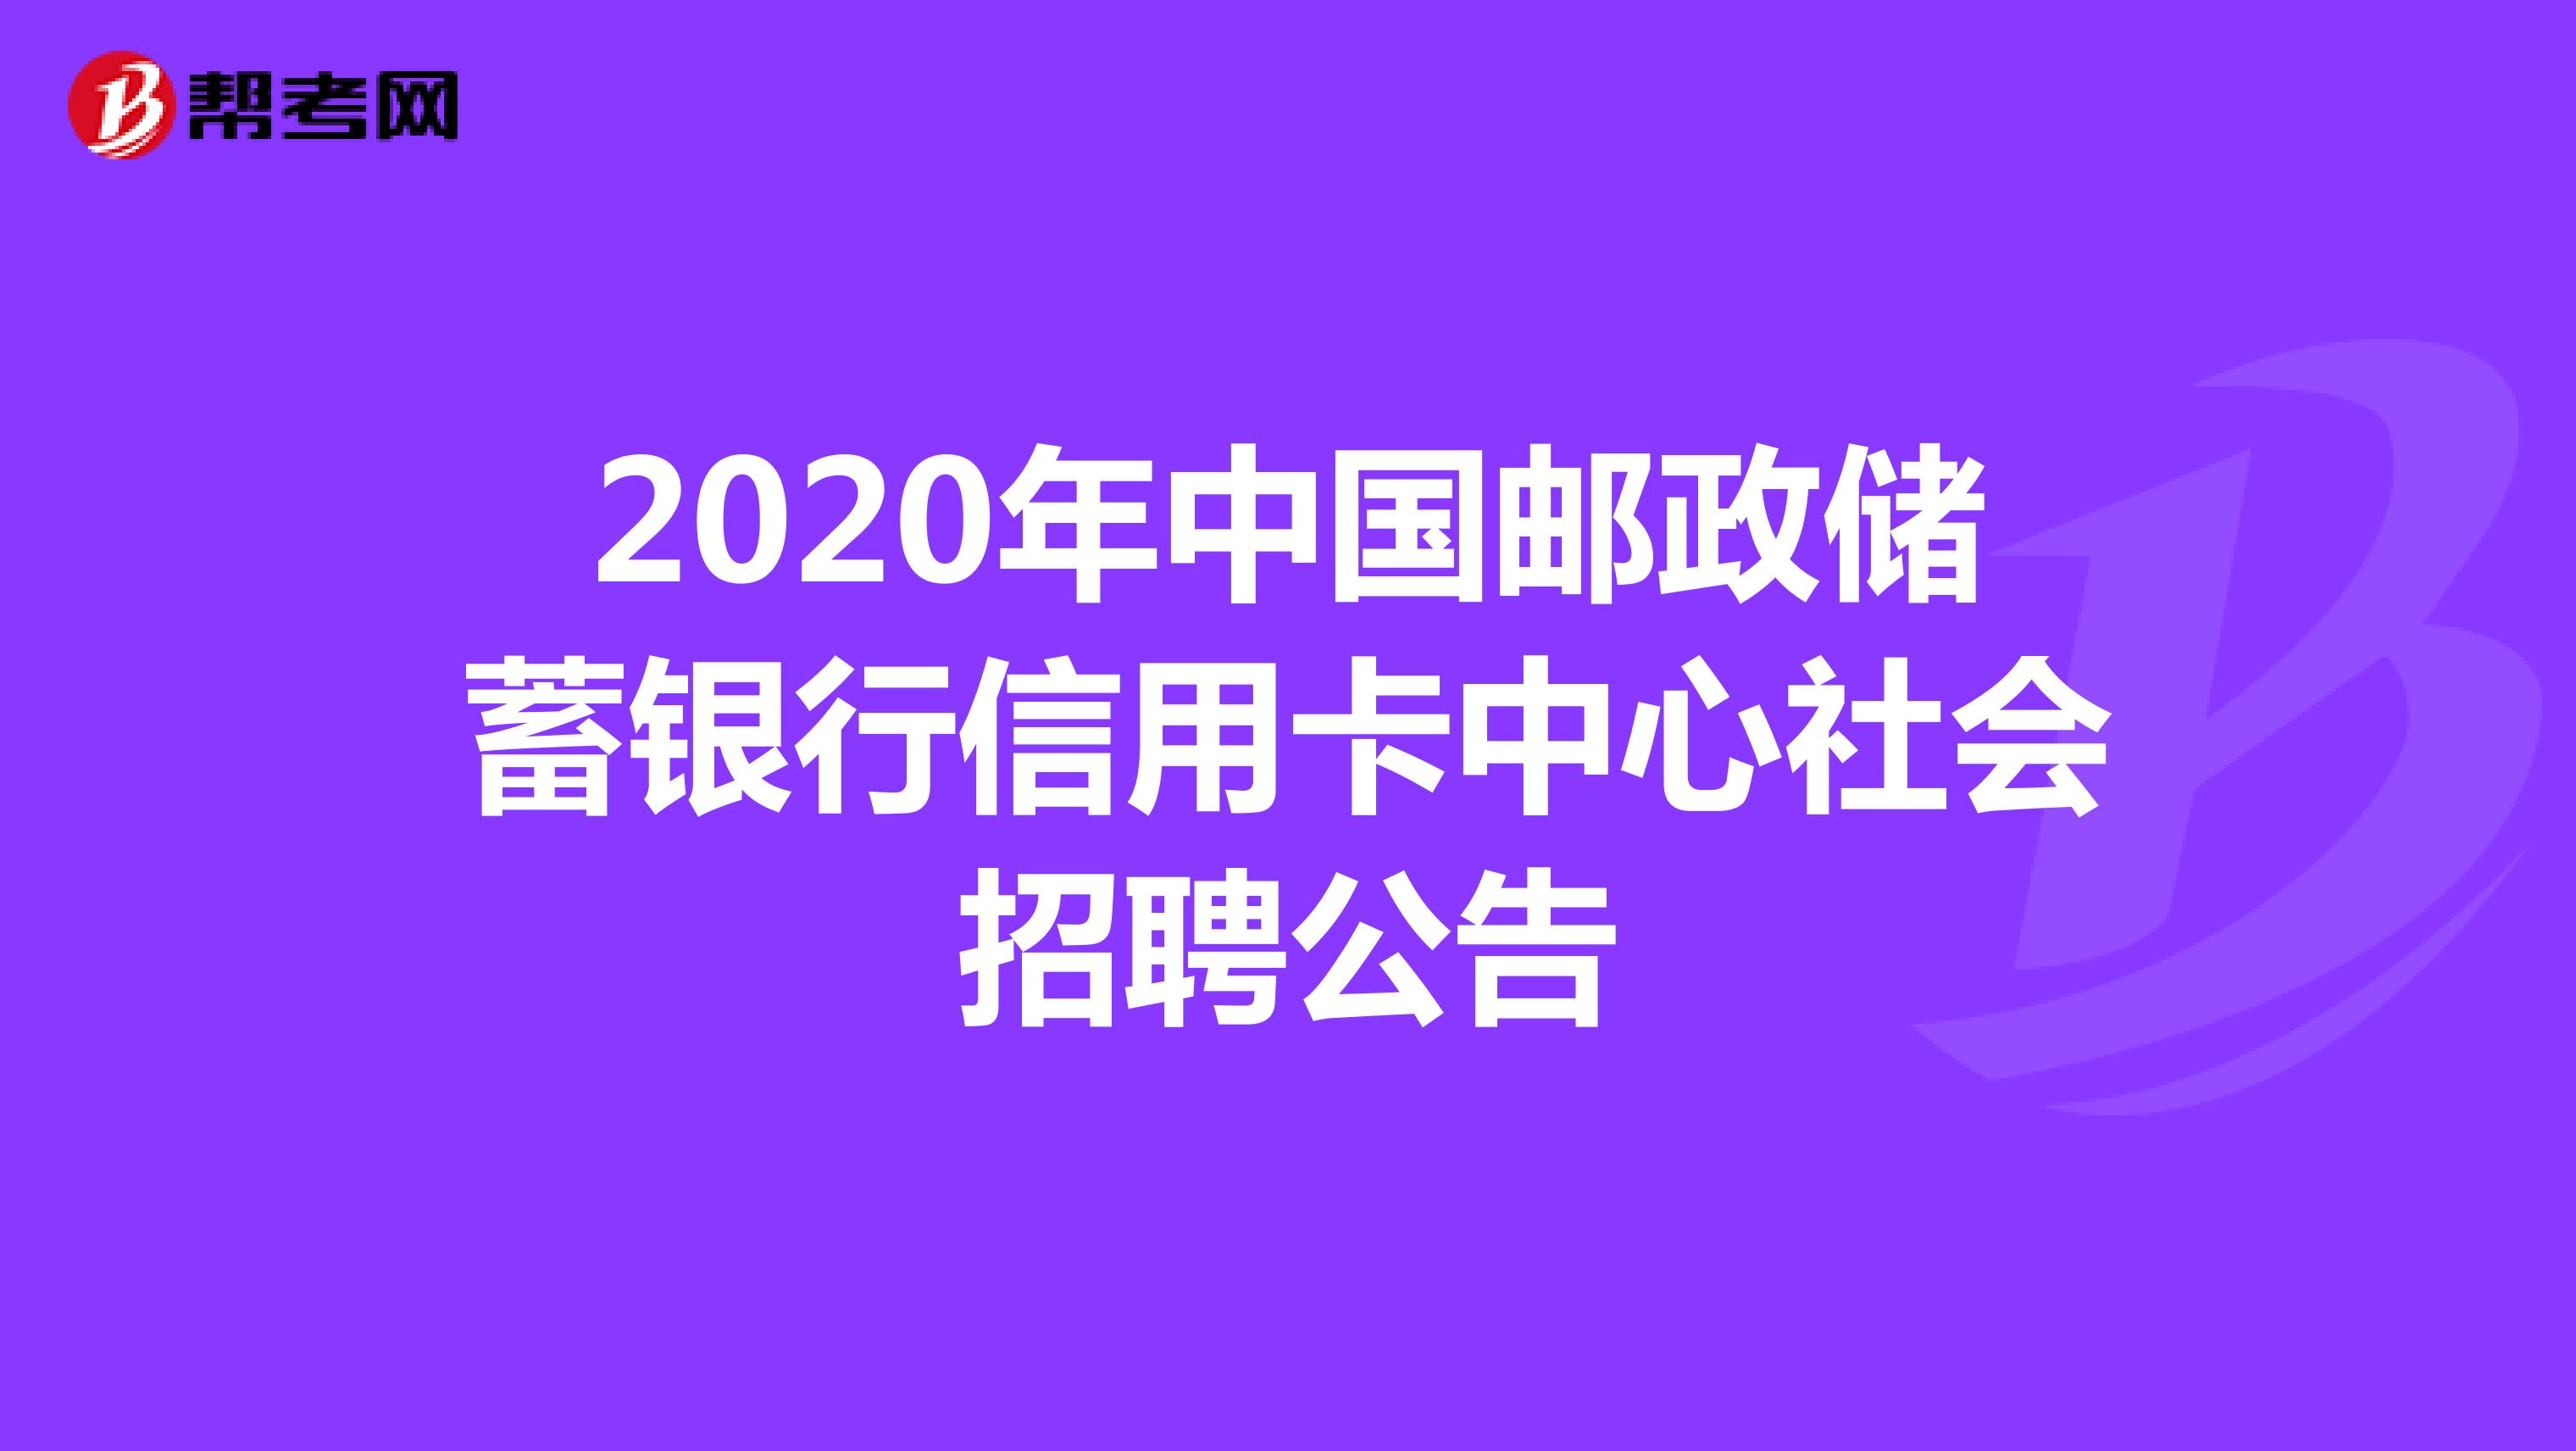 2020年中国邮政储蓄银行信用卡中心社会招聘公告